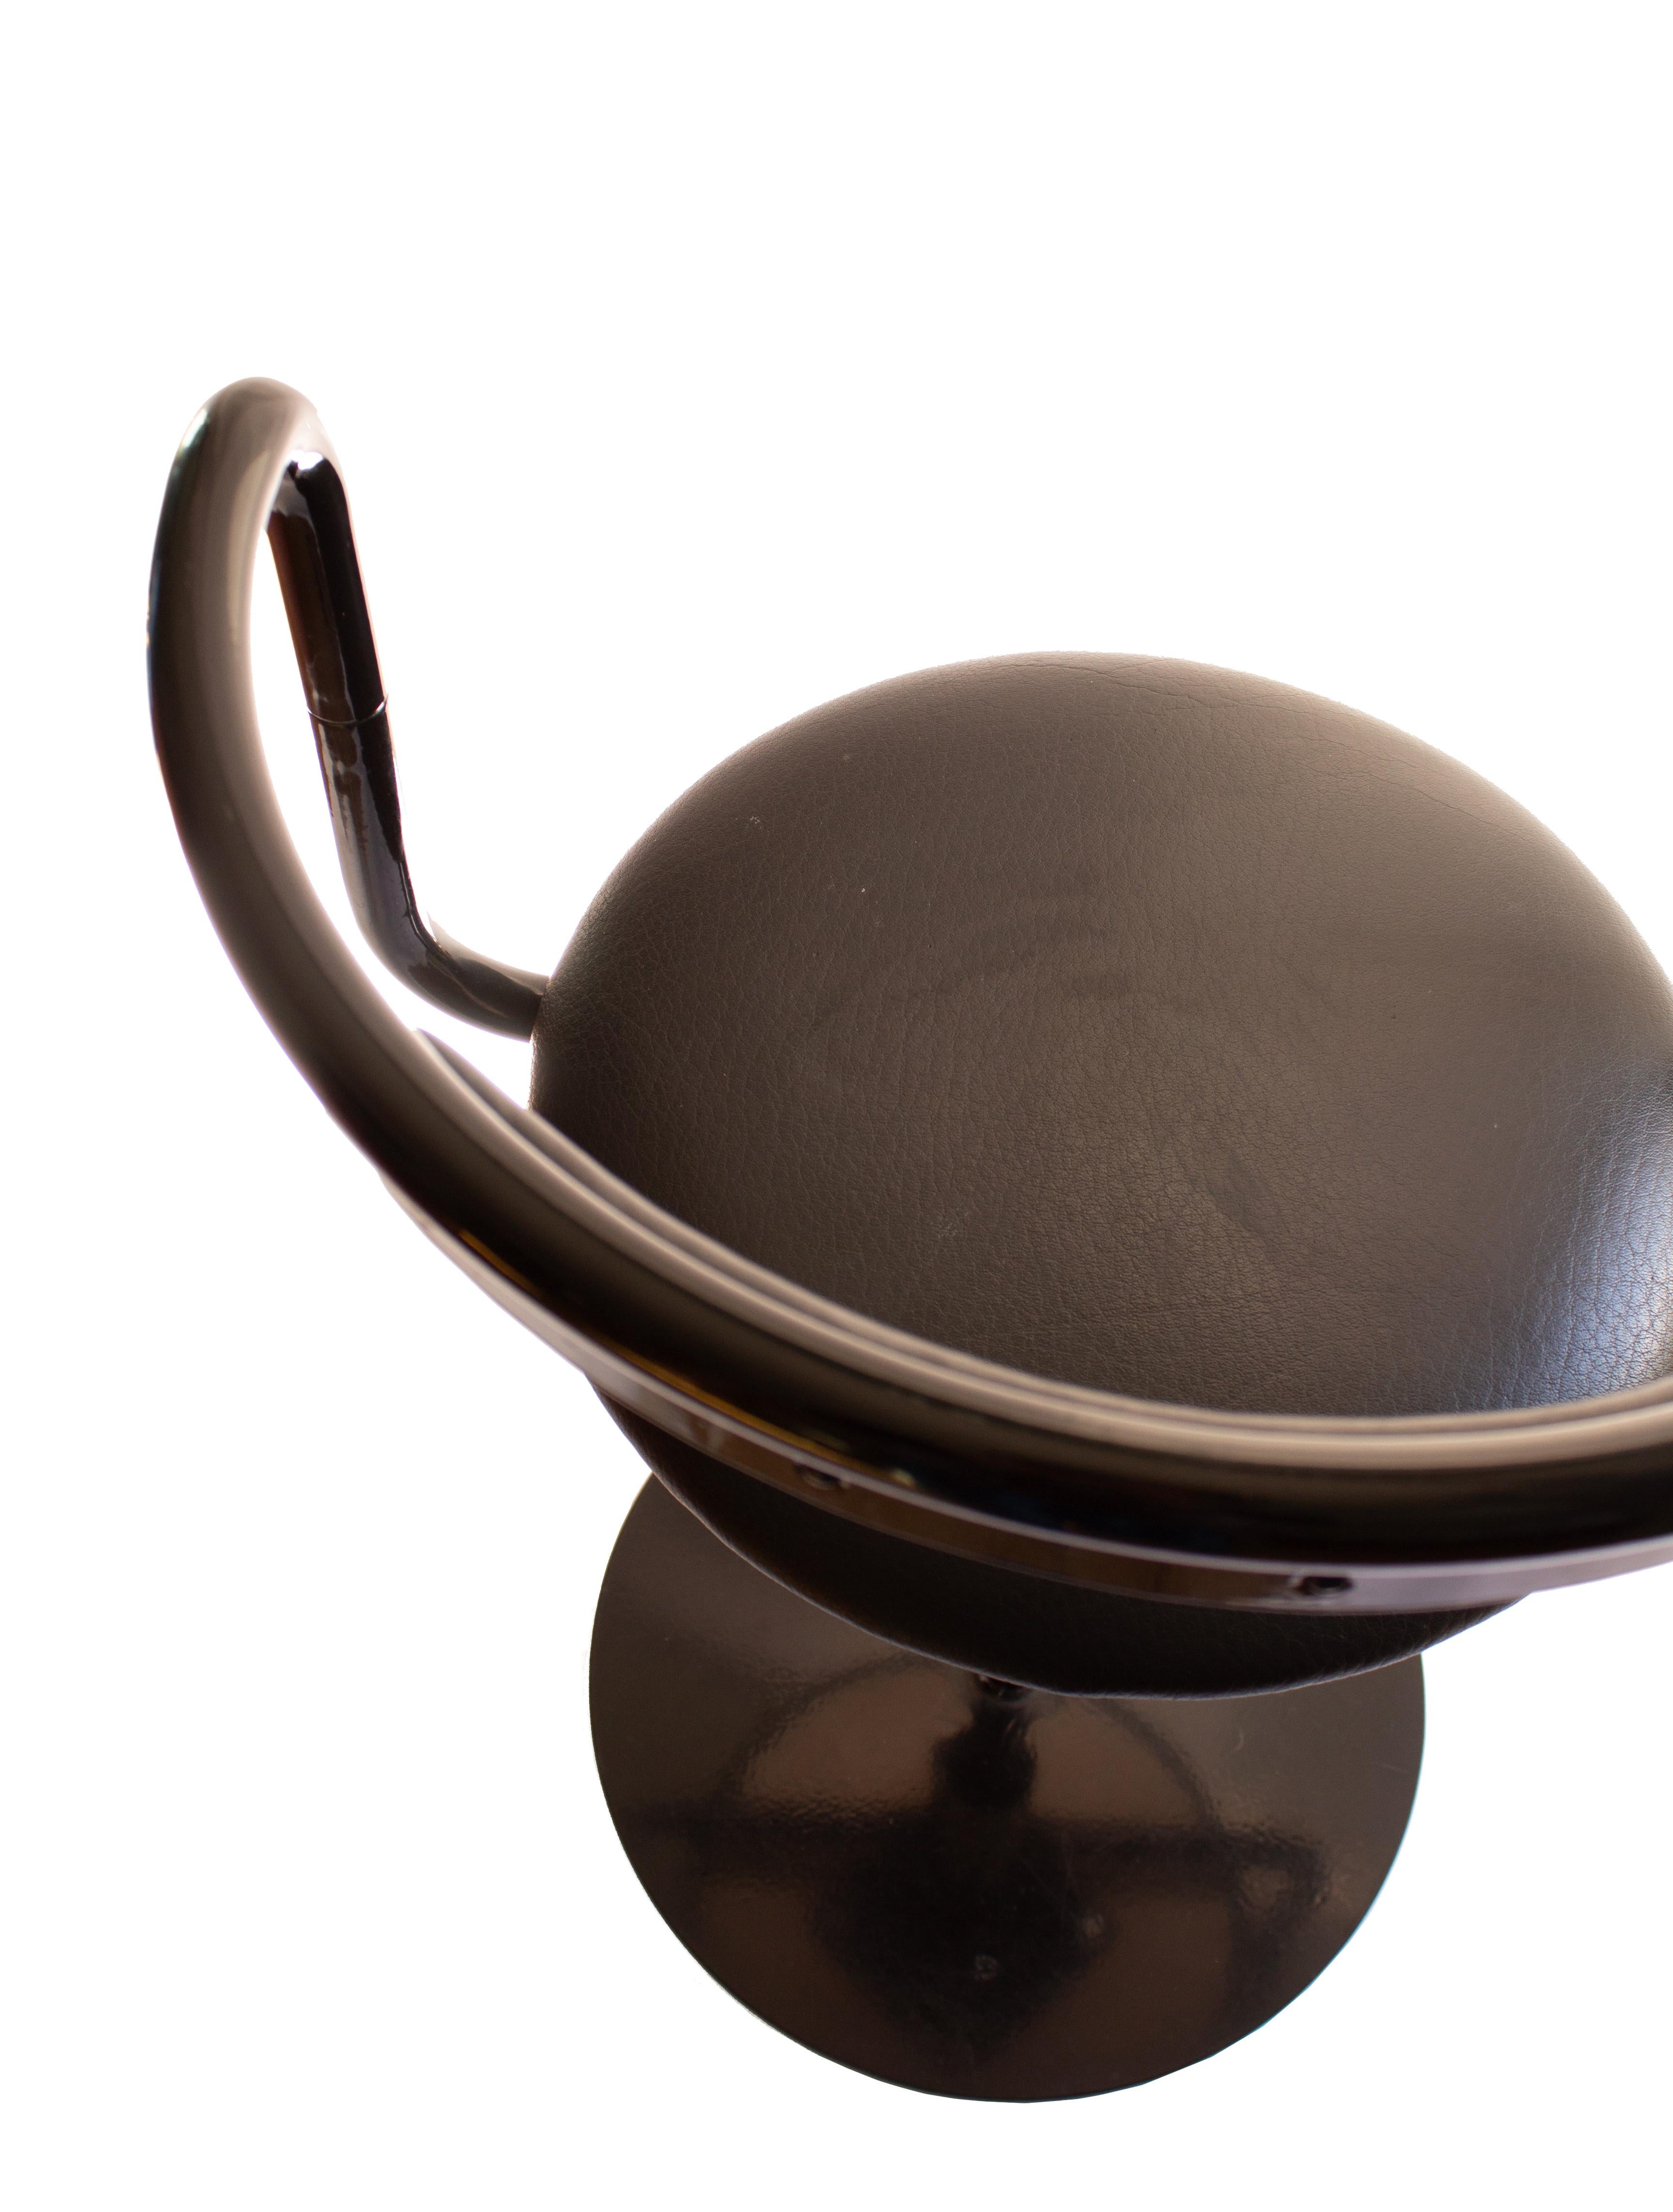 Swedish furniture designer John Kandell's Swivel Chair 